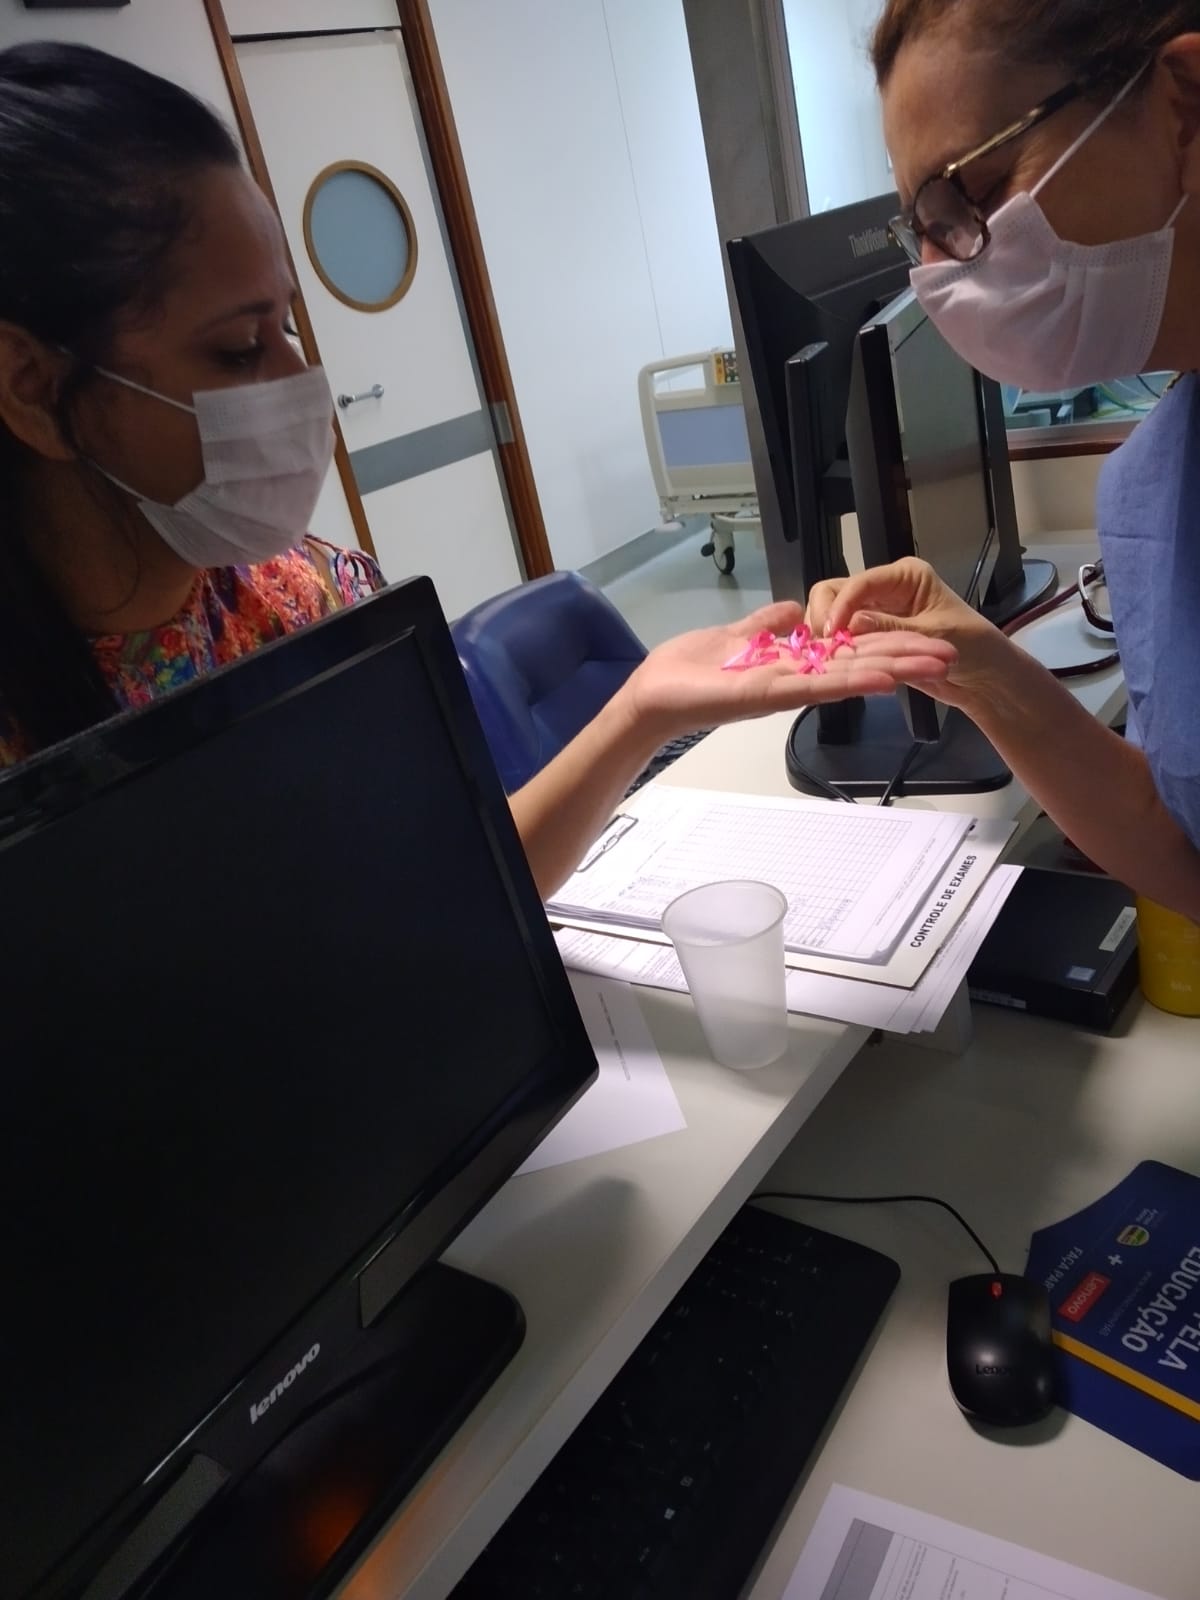 Colaboradores do ICDF recebem laços cor-de-rosa para lembrar mês de prevenção